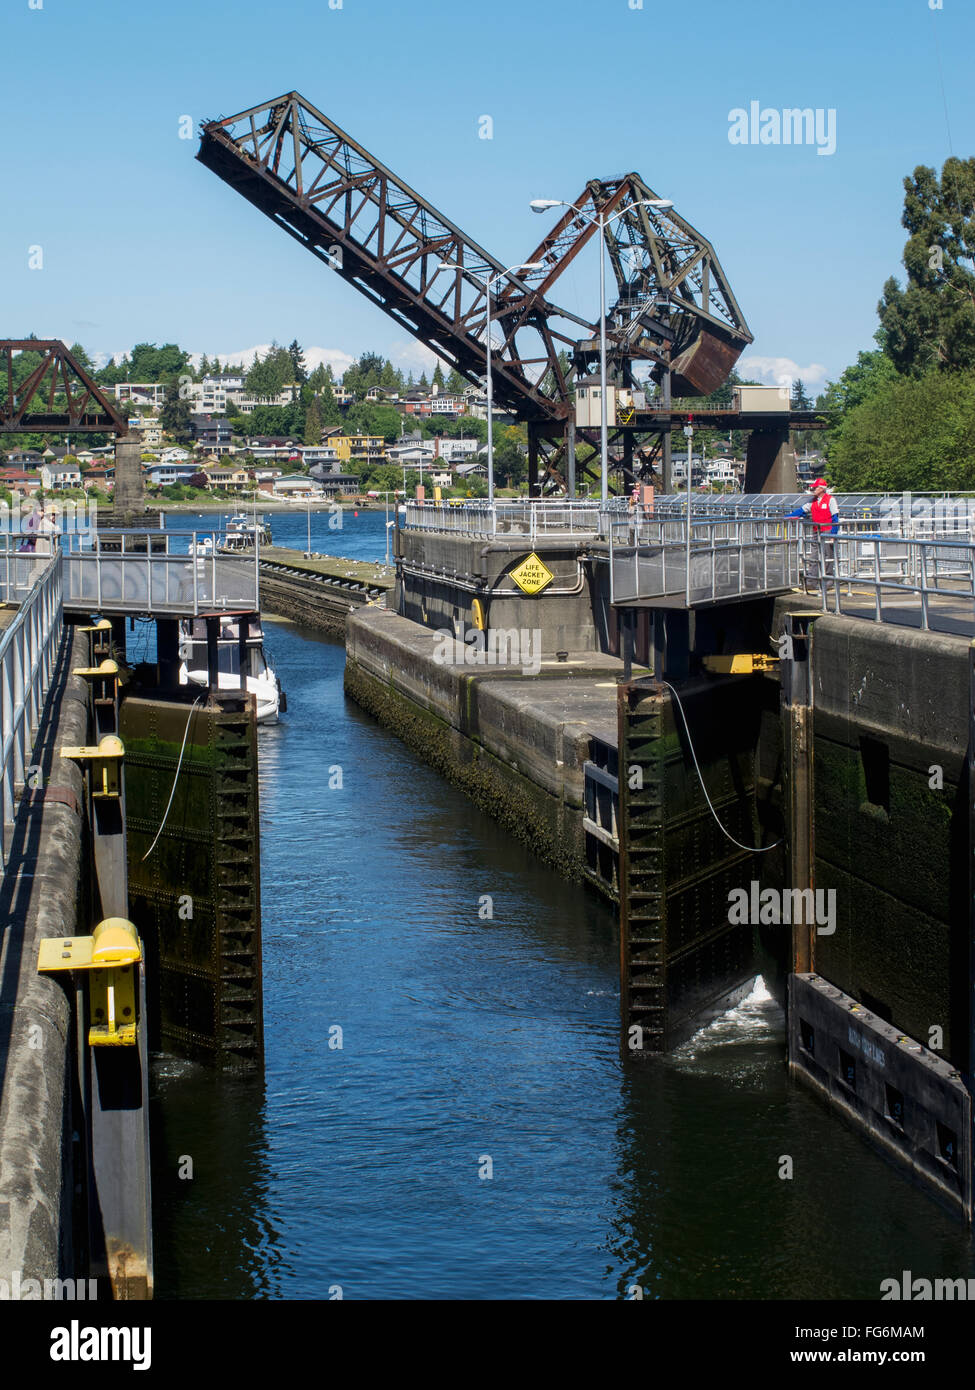 Las puertas de un candado abierto y un puente levadizo levantado en el fondo, Ballard Locks, Seattle, Washington, EE.UU. Verano Foto de stock